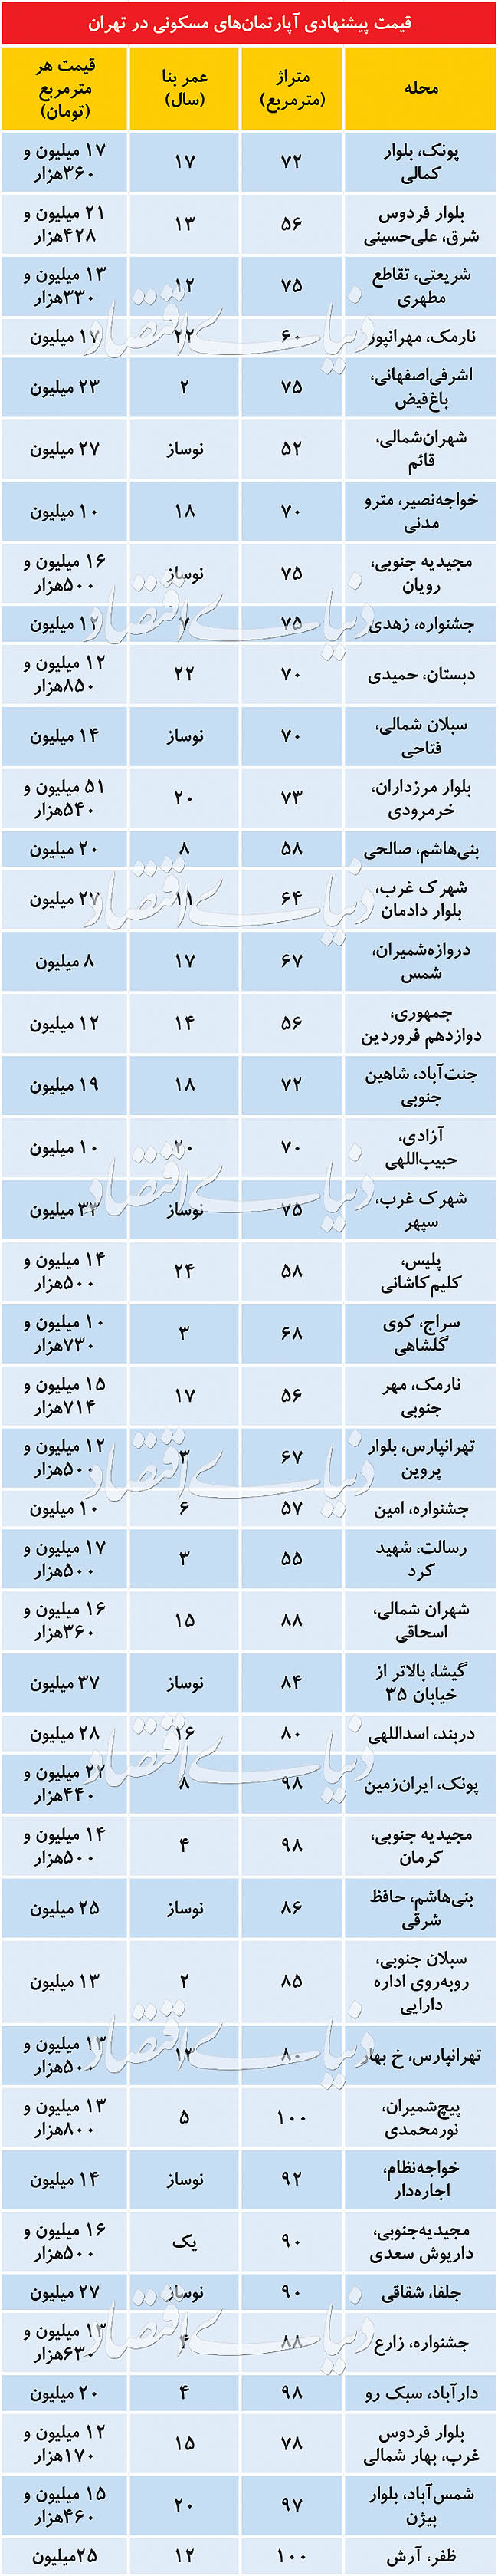 قیمت پیشنهادی آپارتمان در تهران +جدول